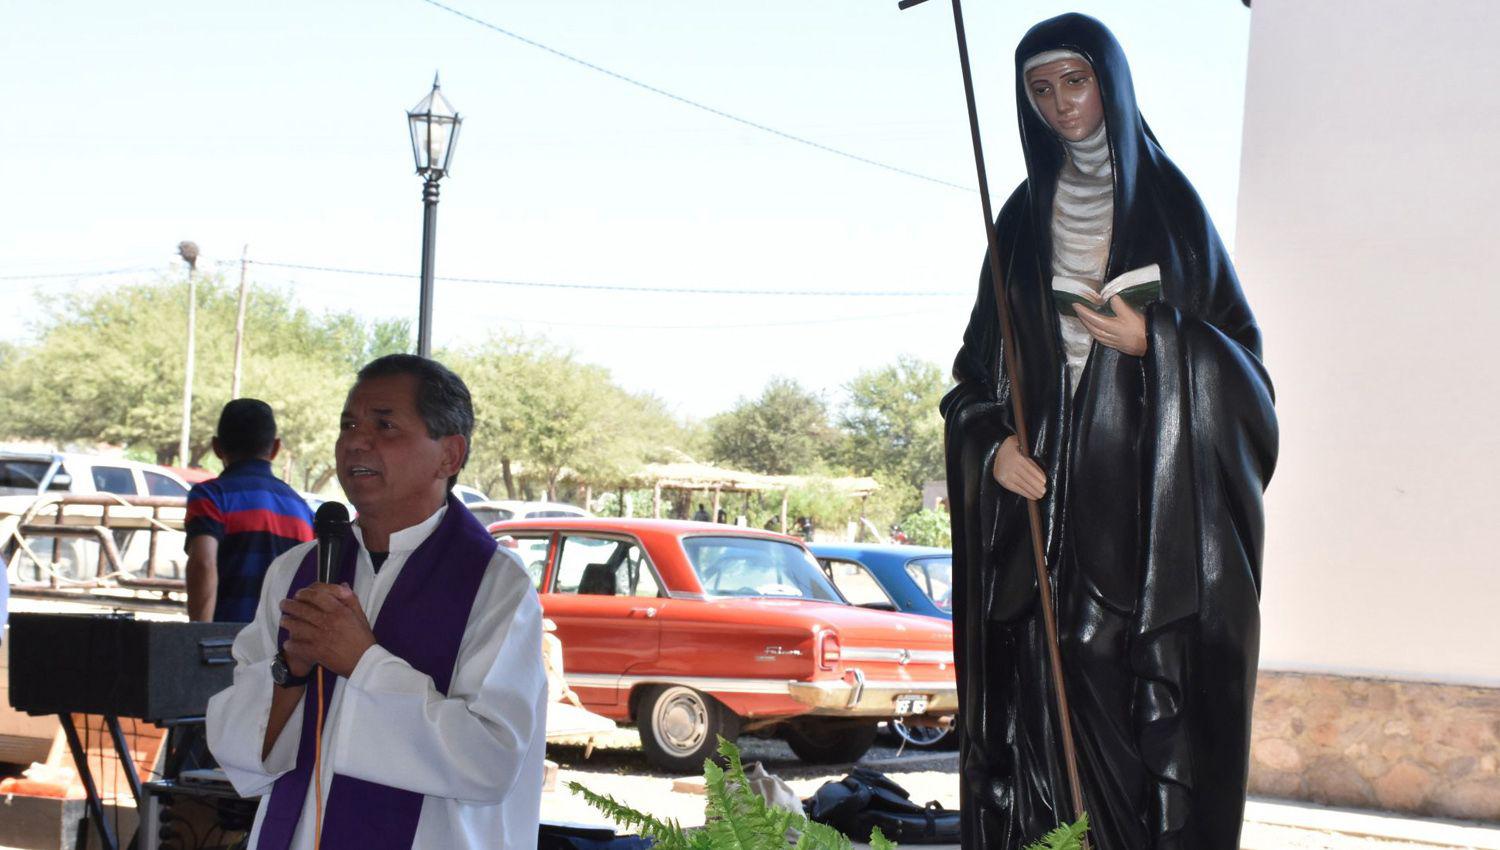 FINALIDAD Ser� en homenaje a la beata santiagueña
